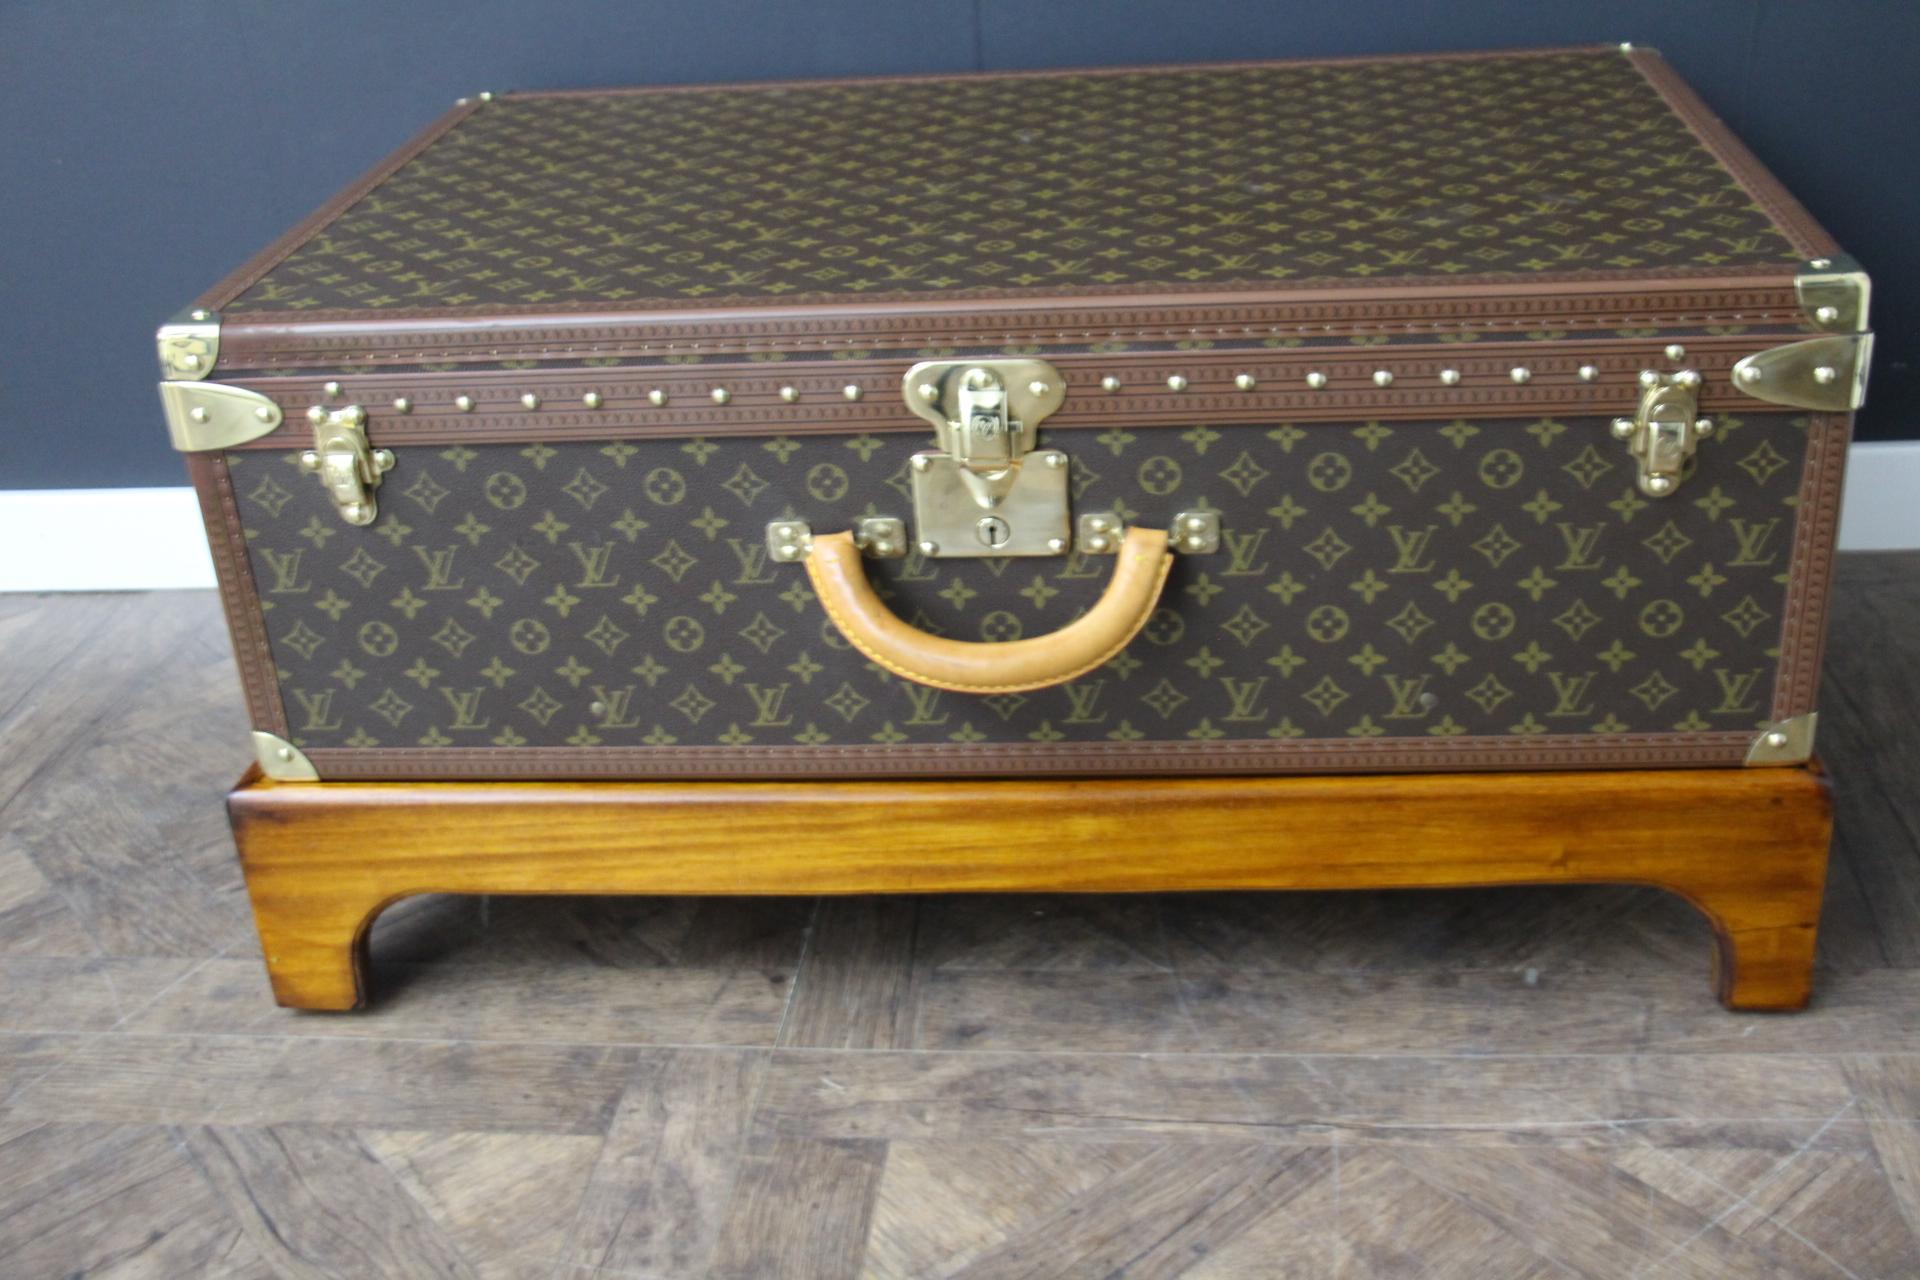 Ce bagage est une magnifique valise Louis Vuitton Alzer monogramme. Cette valise de 80 cm est la plus grande et la plus luxueuse des valises Louis Vuitton. Il est doté de tous les accessoires en laiton massif estampillés Louis Vuitton : serrures,